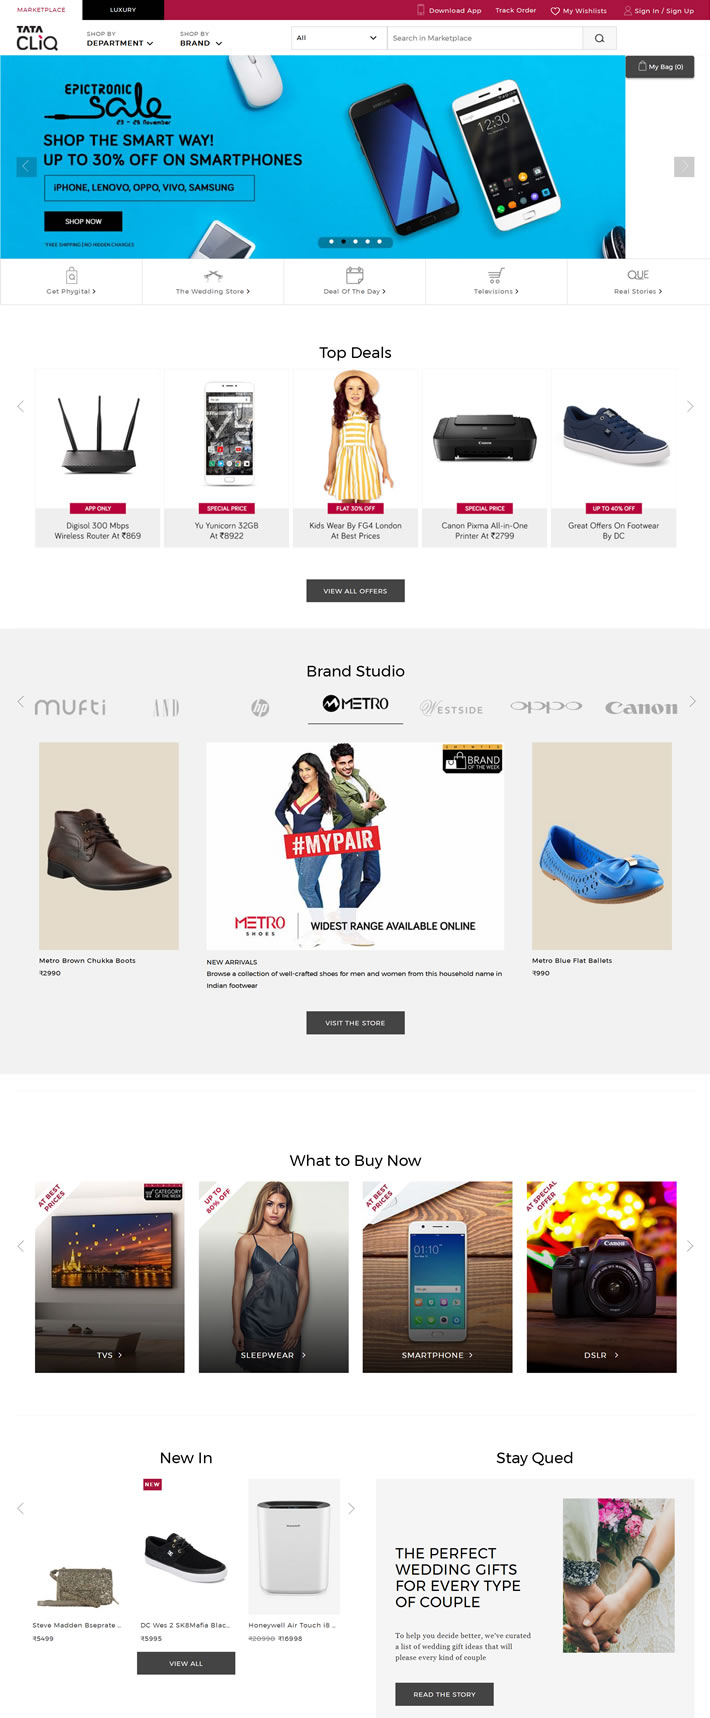 印度购物网站：Tata CLiQ